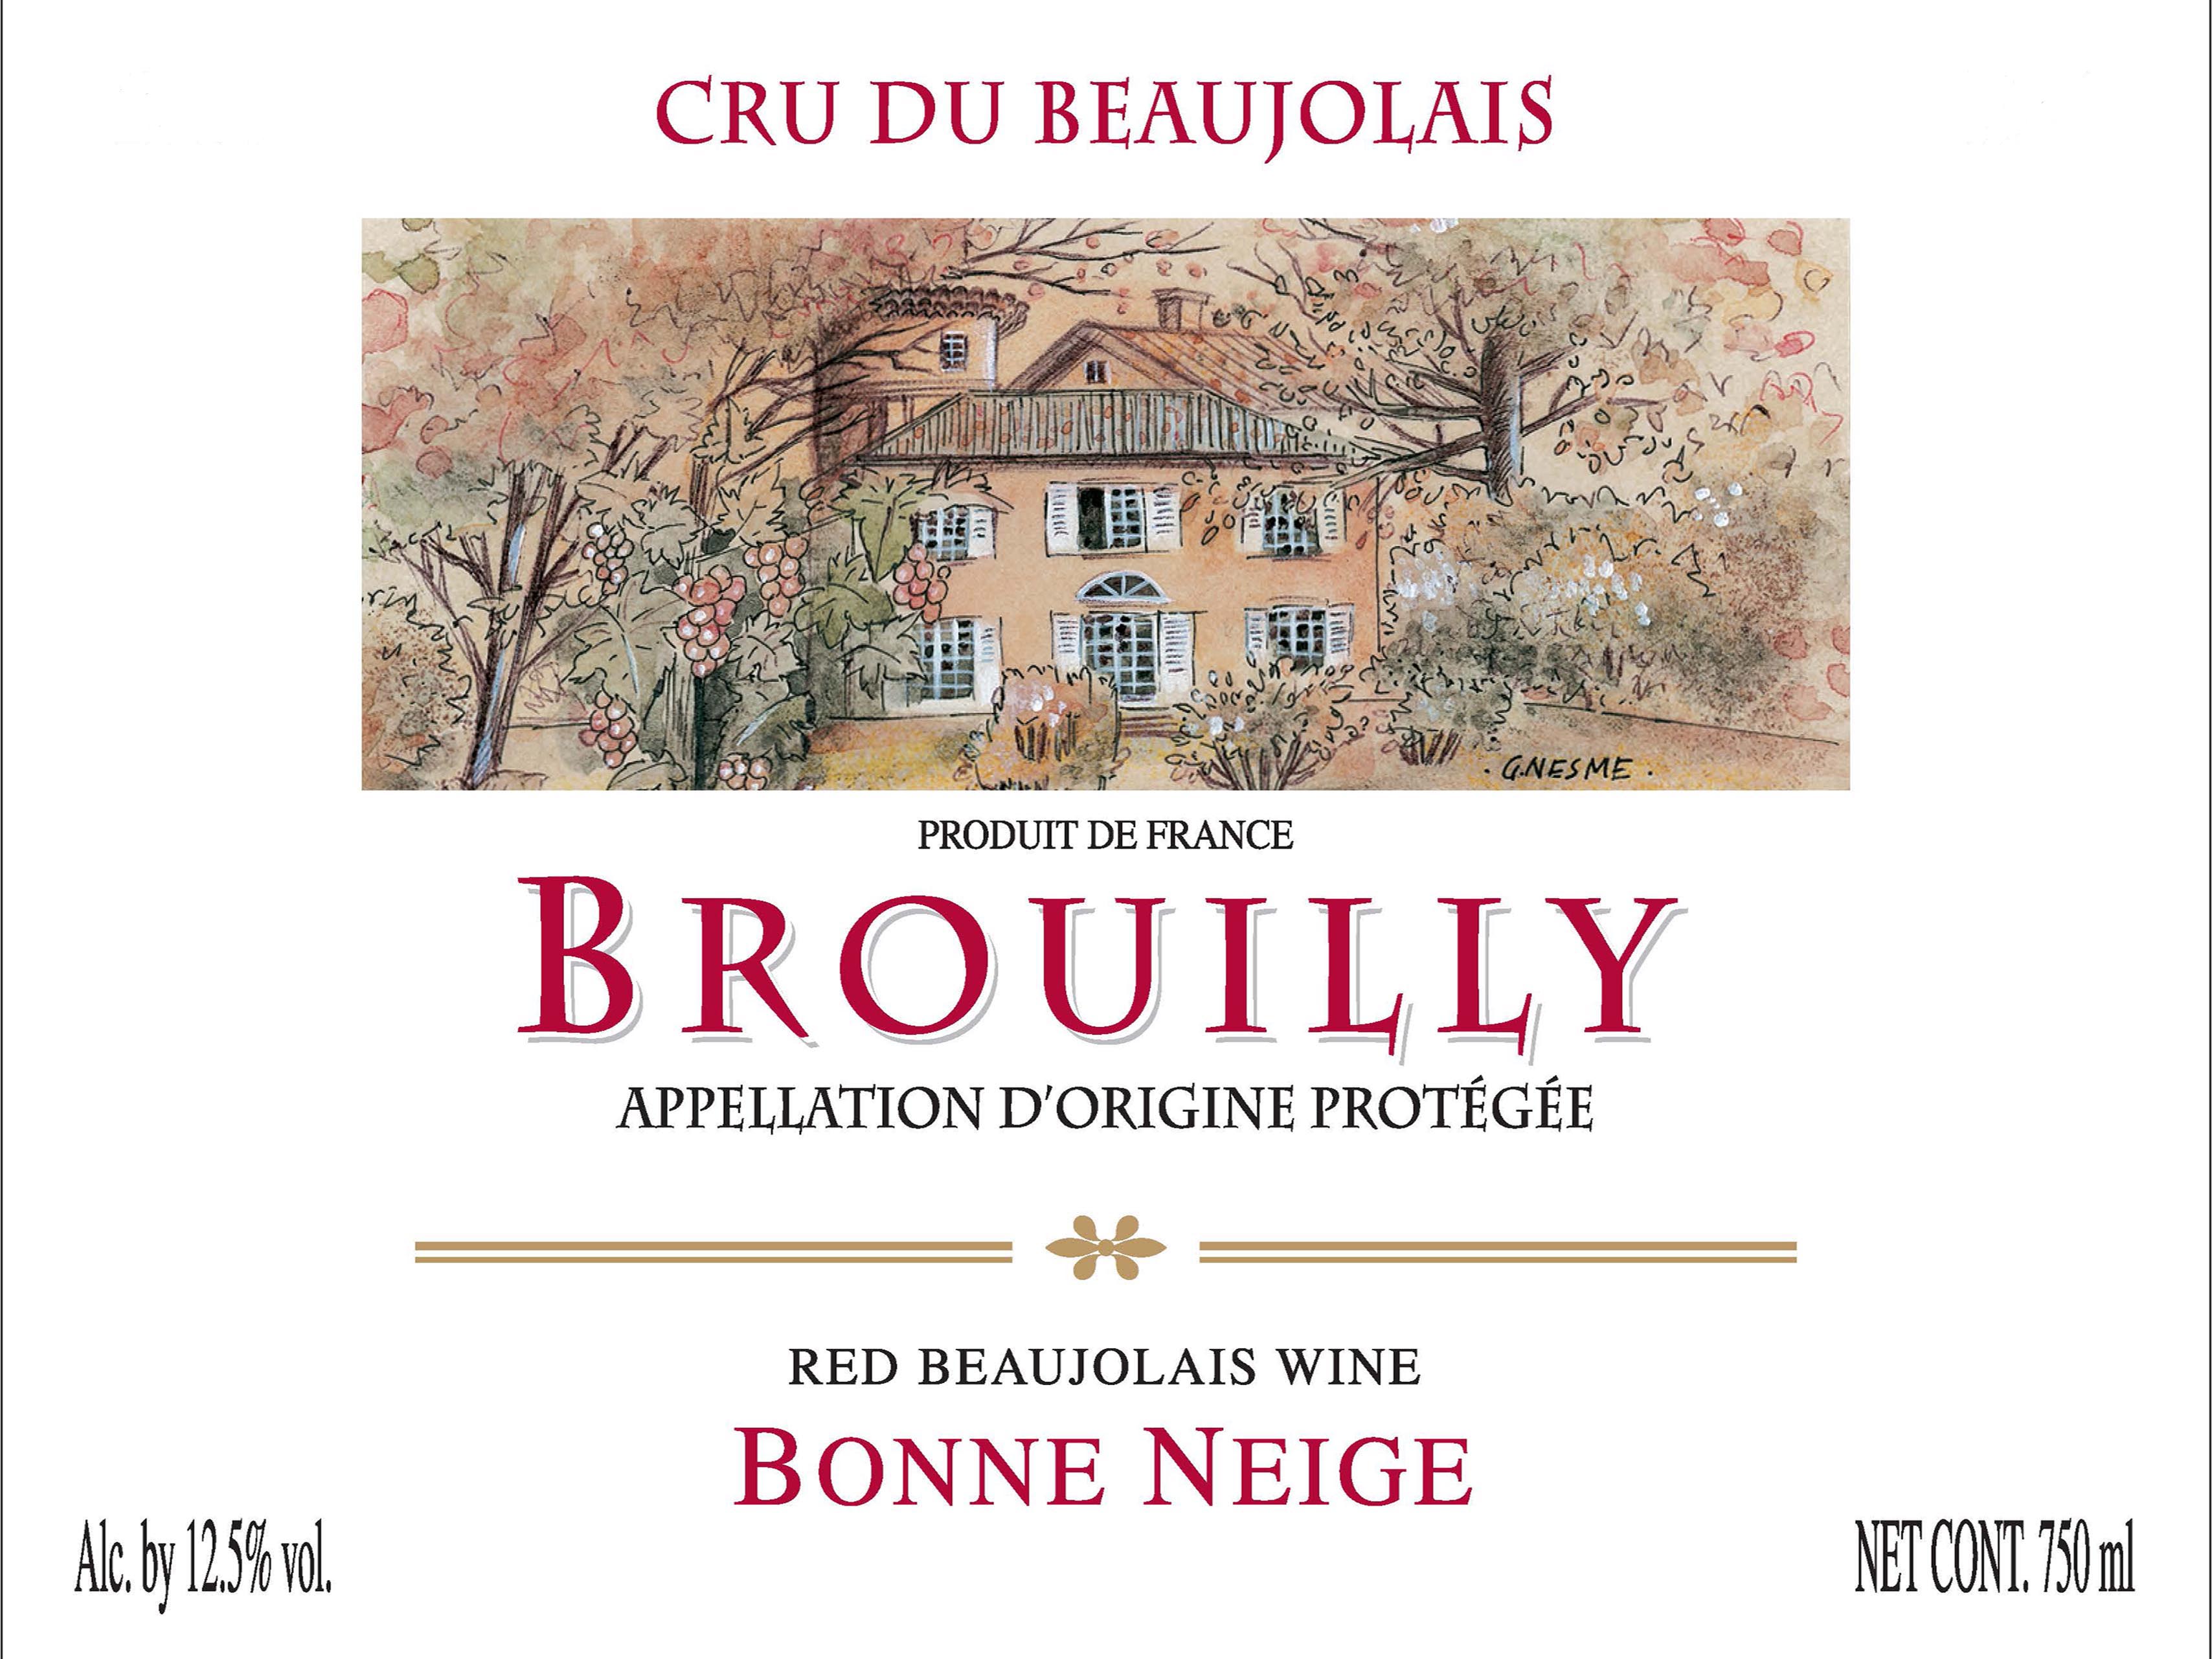 Bonne Neige - Brouilly label